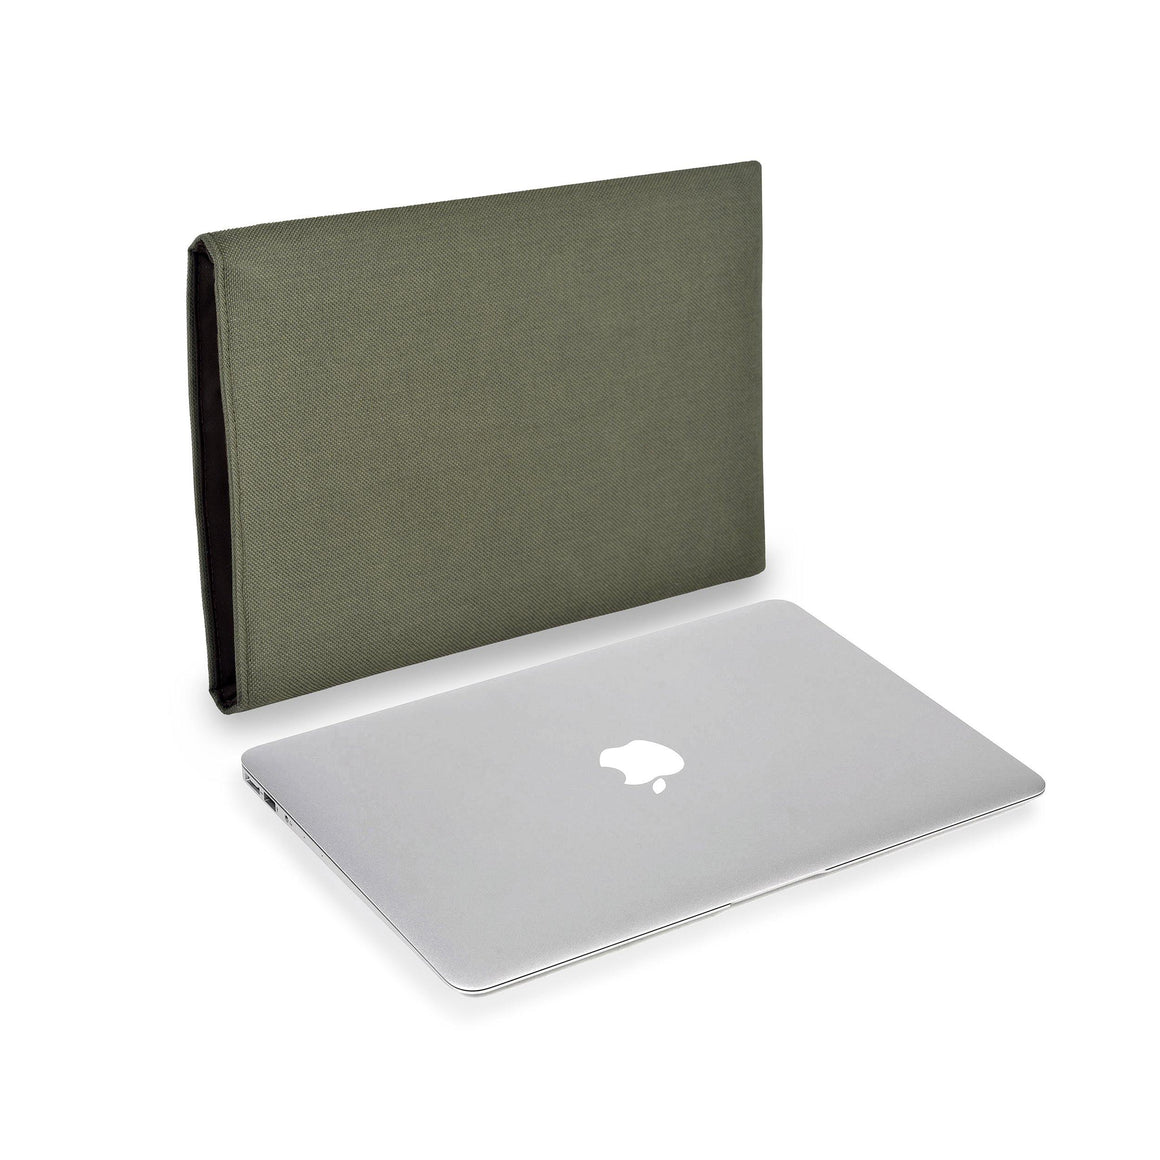 MacBook Cordura Olive Green - Wrappers UK